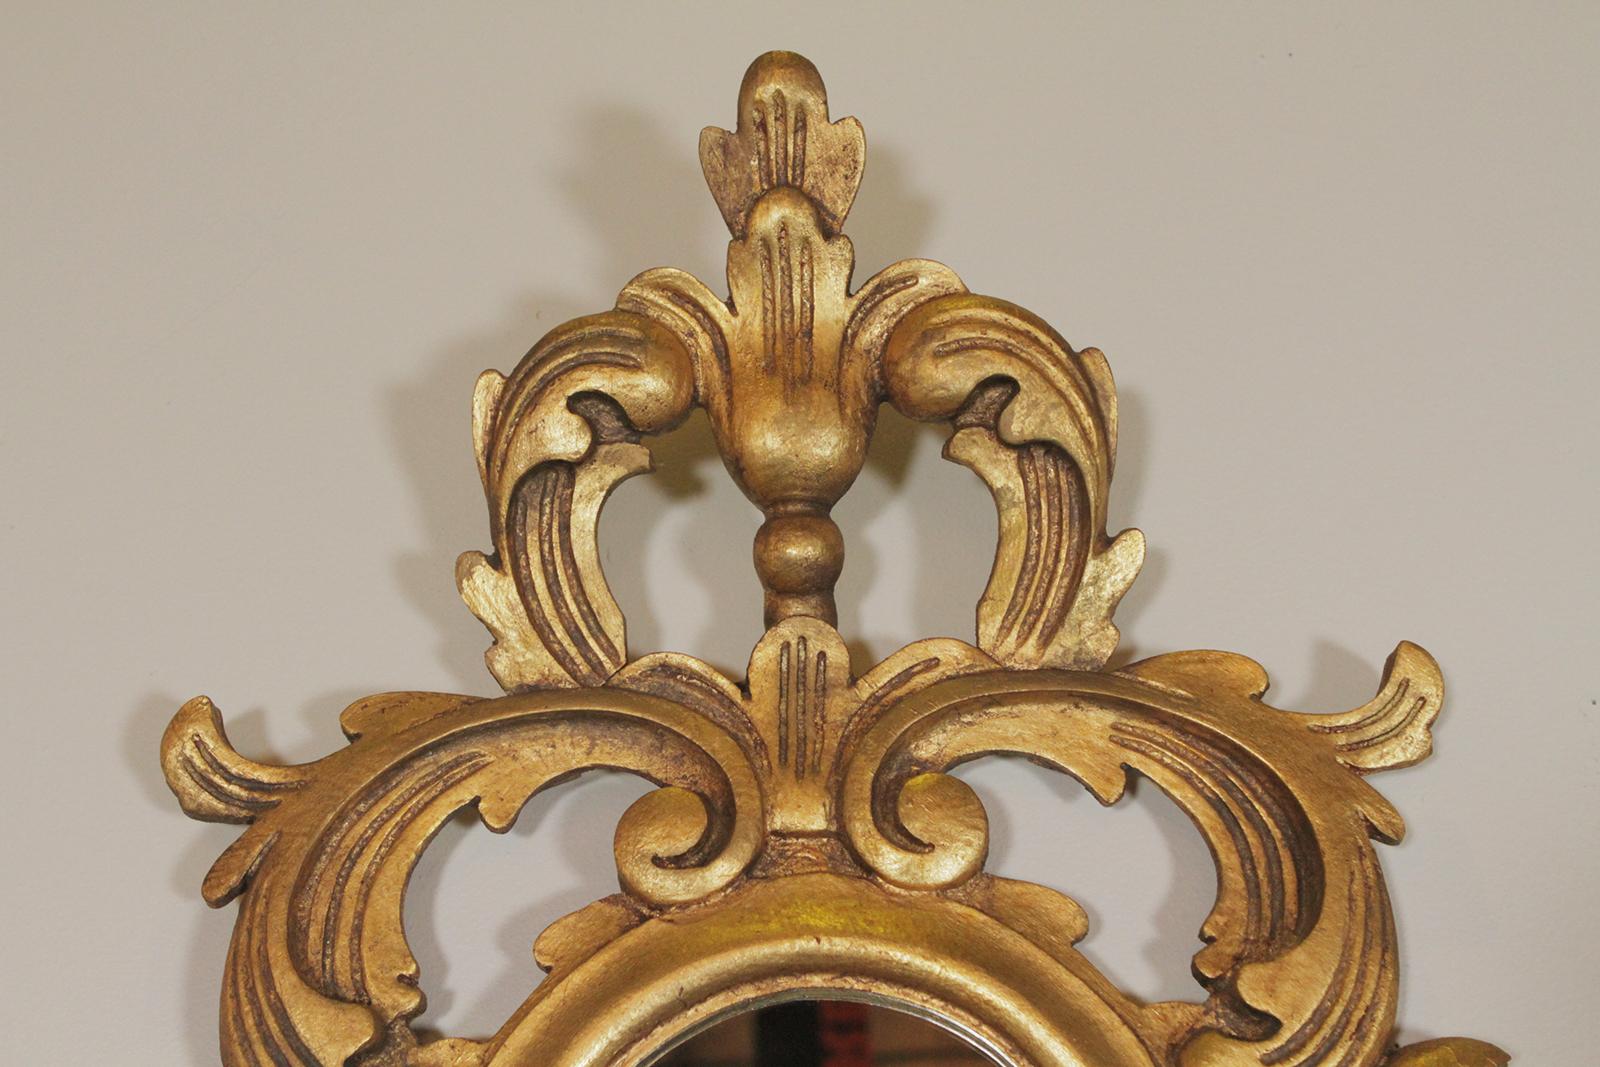 Miroir en bois sculpté de style rococo, doré et doré, fabriqué en Espagne
Dimensions : 31